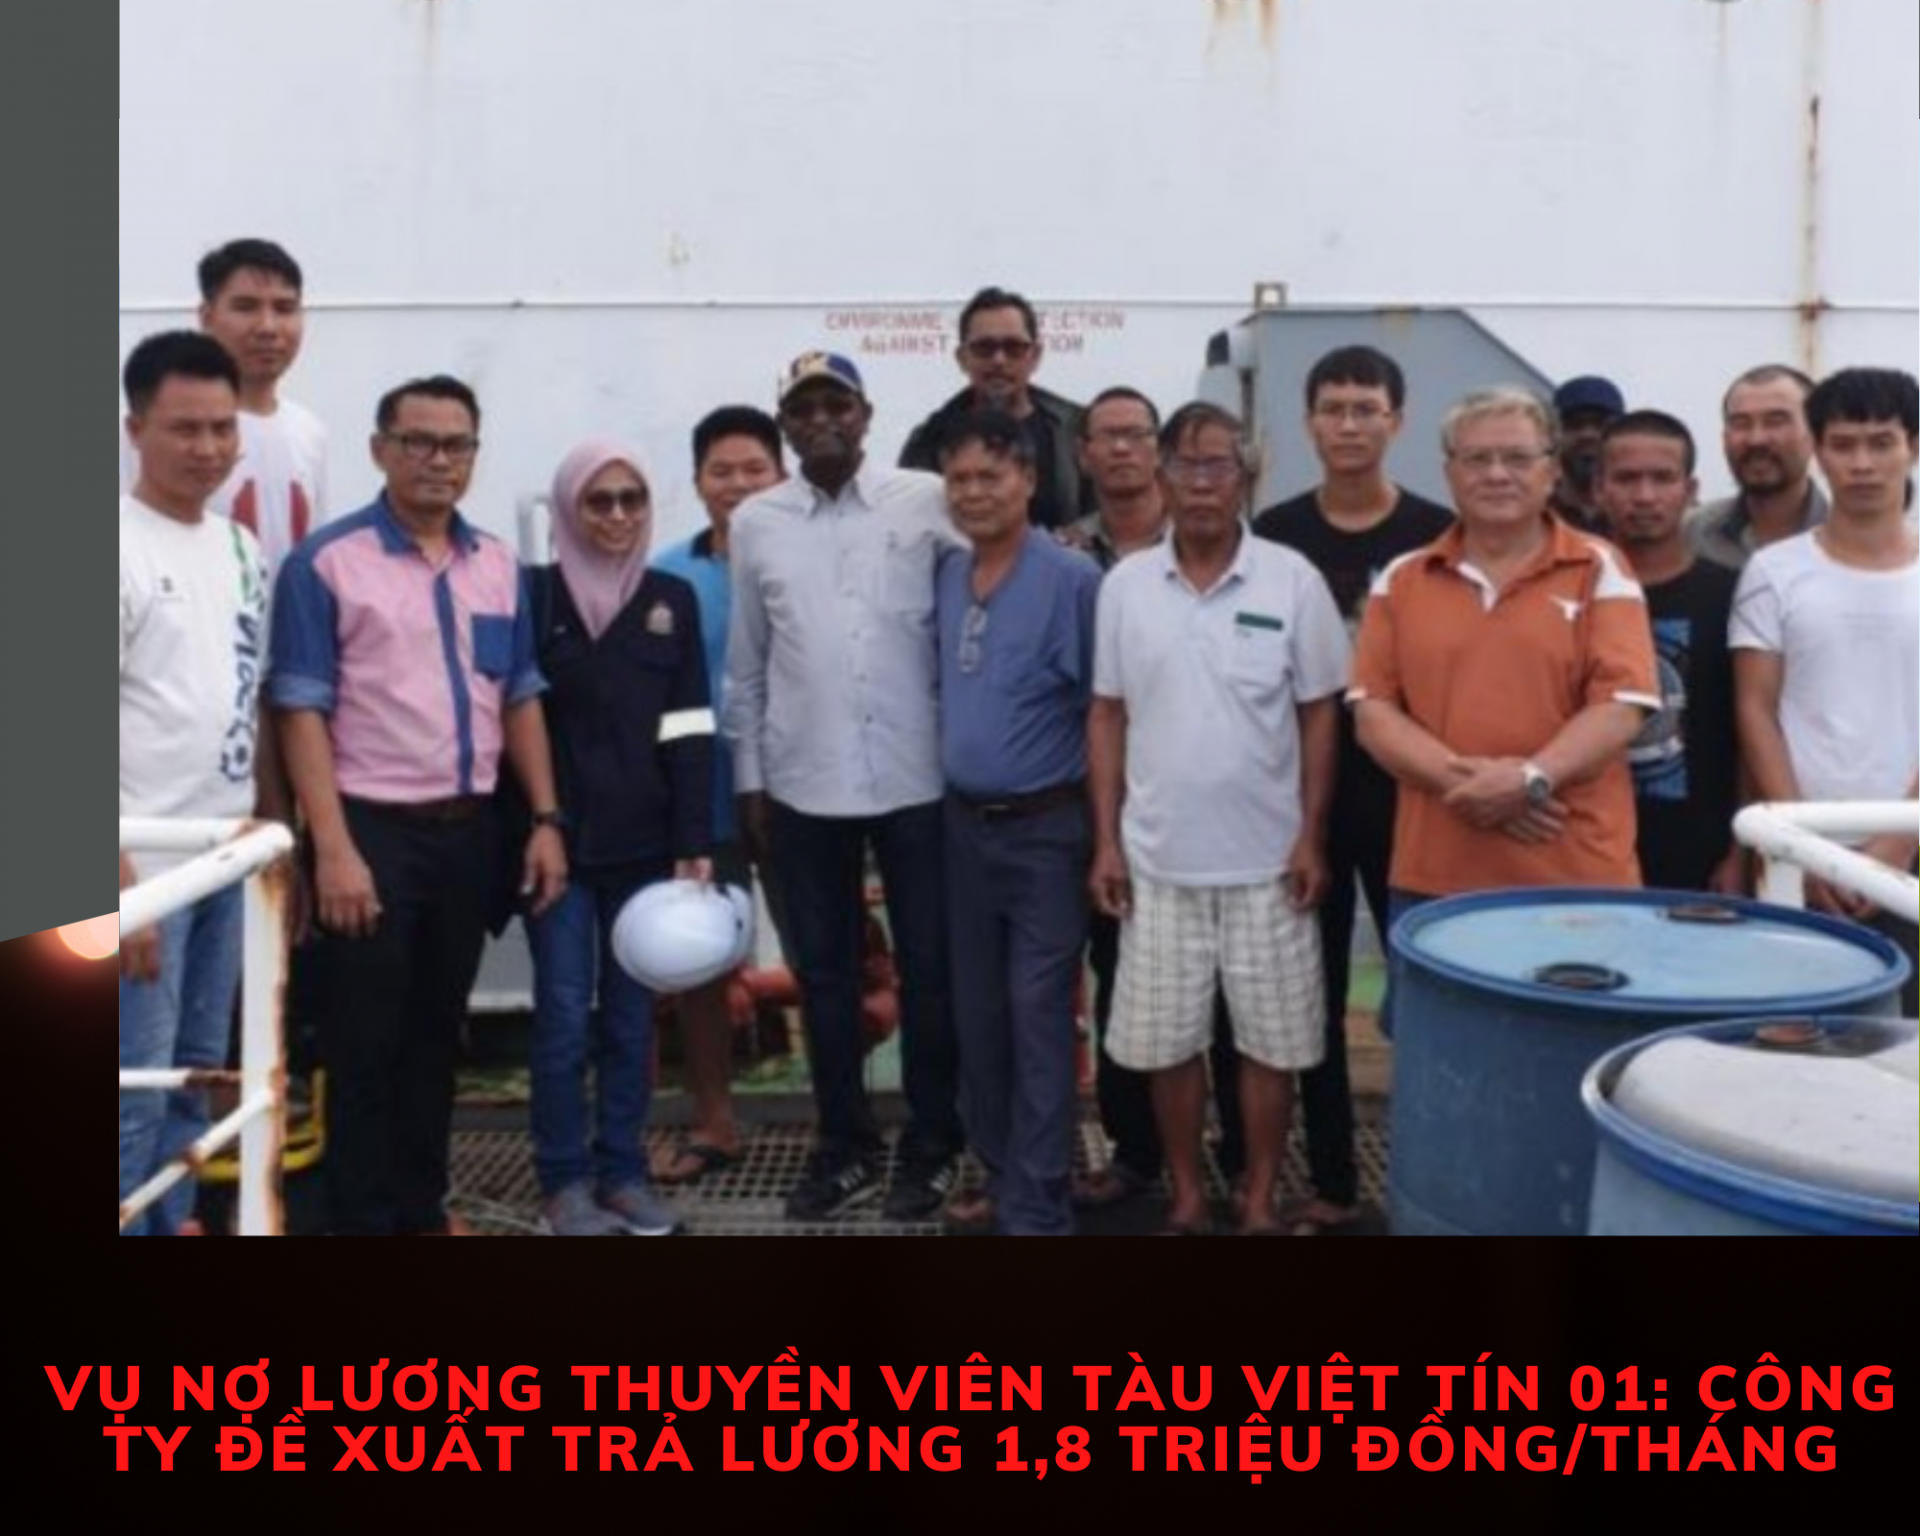 Vụ nợ lương thuyền viên tàu Việt Tín 01: Công ty đề xuất trả lương 1,8 triệu đồng/tháng